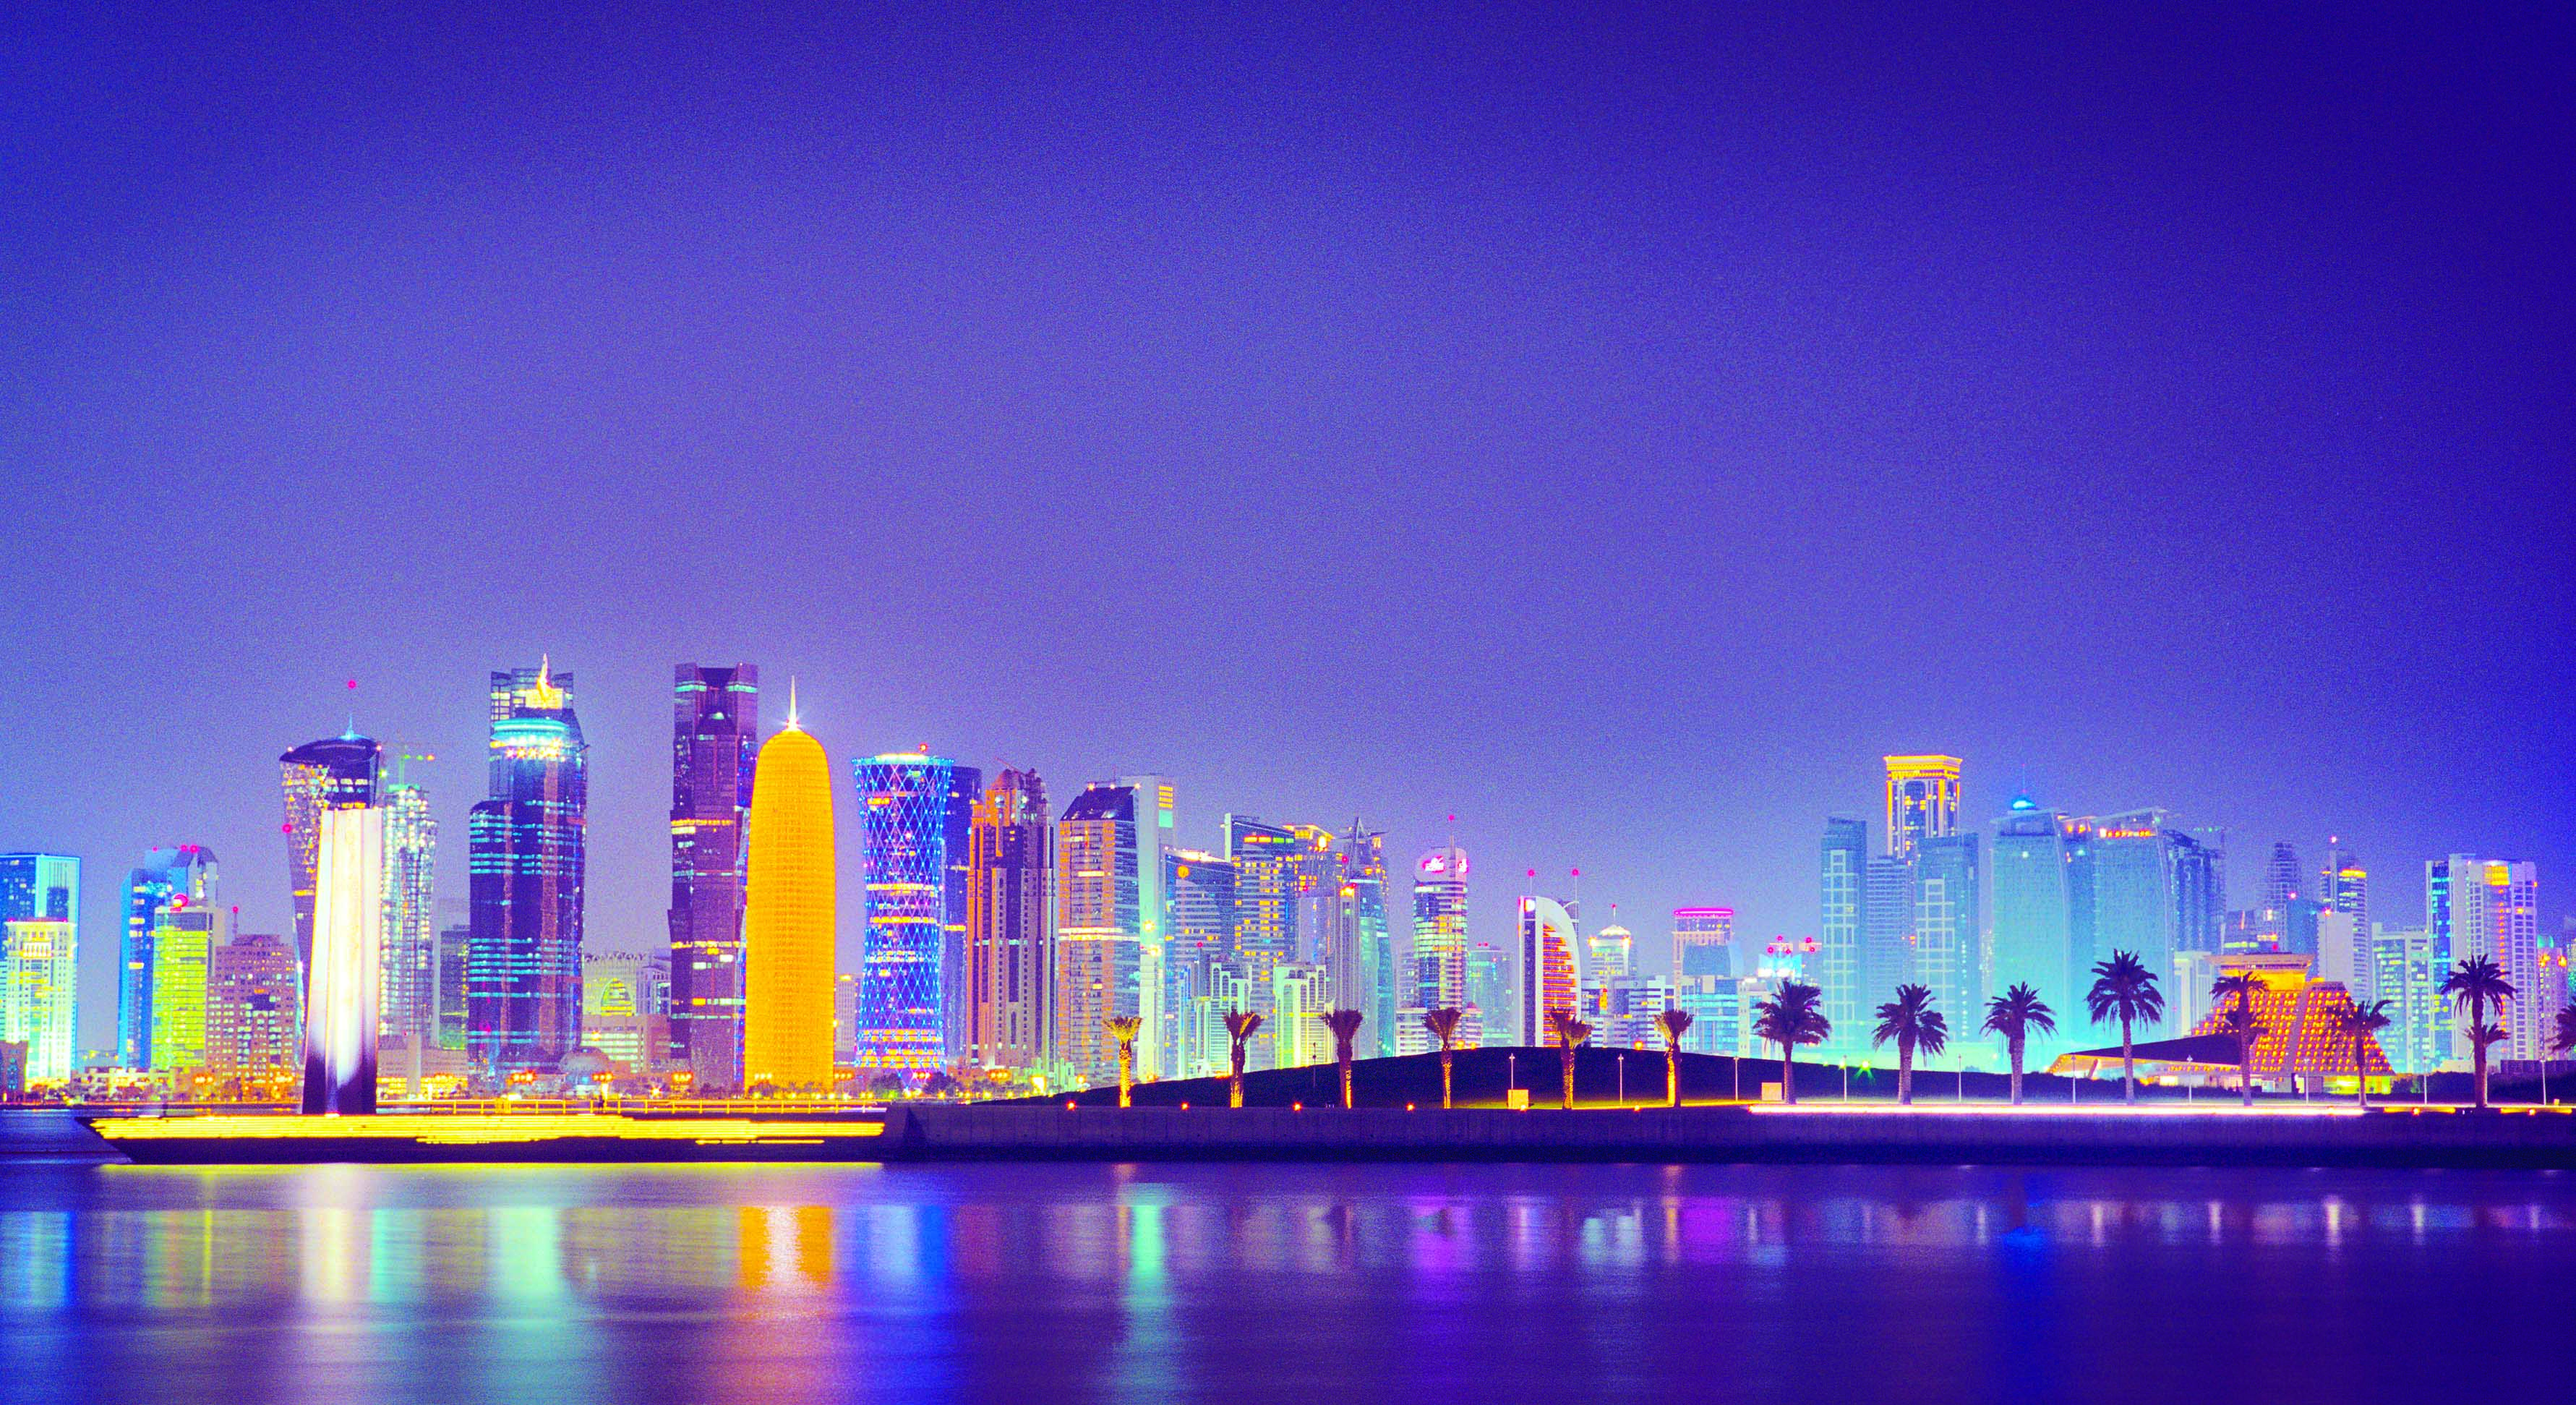 قطر.. سياحة تراثية وثقافية ومعالم حضارية ومعمارية